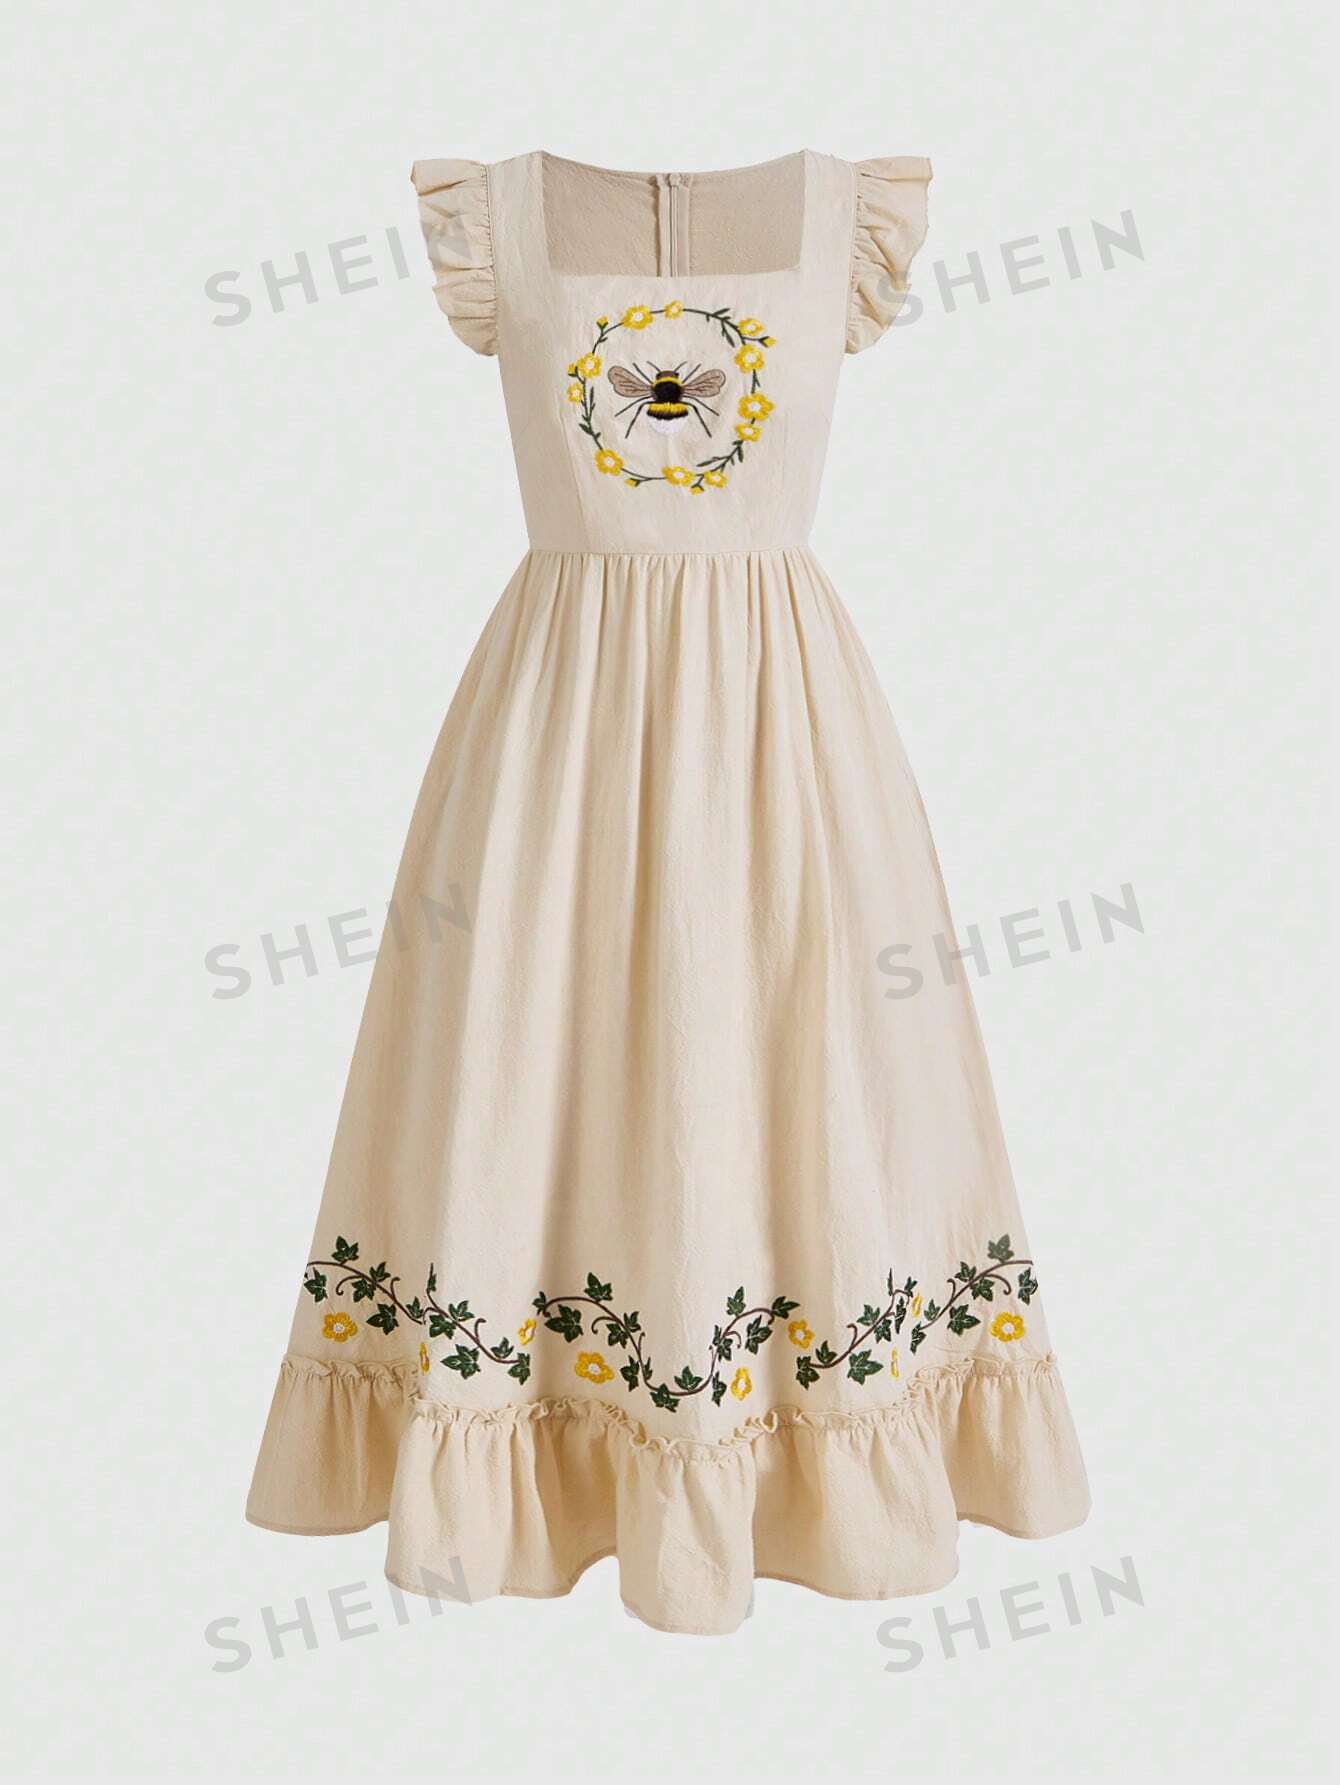 ROMWE Fairycore Vintage Cottagecore женское платье с вышивкой пчелы и развевающимися рукавами в стиле кантри, абрикос romwe fairycore женское платье на тонких бретельках с растительной вышивкой абрикос